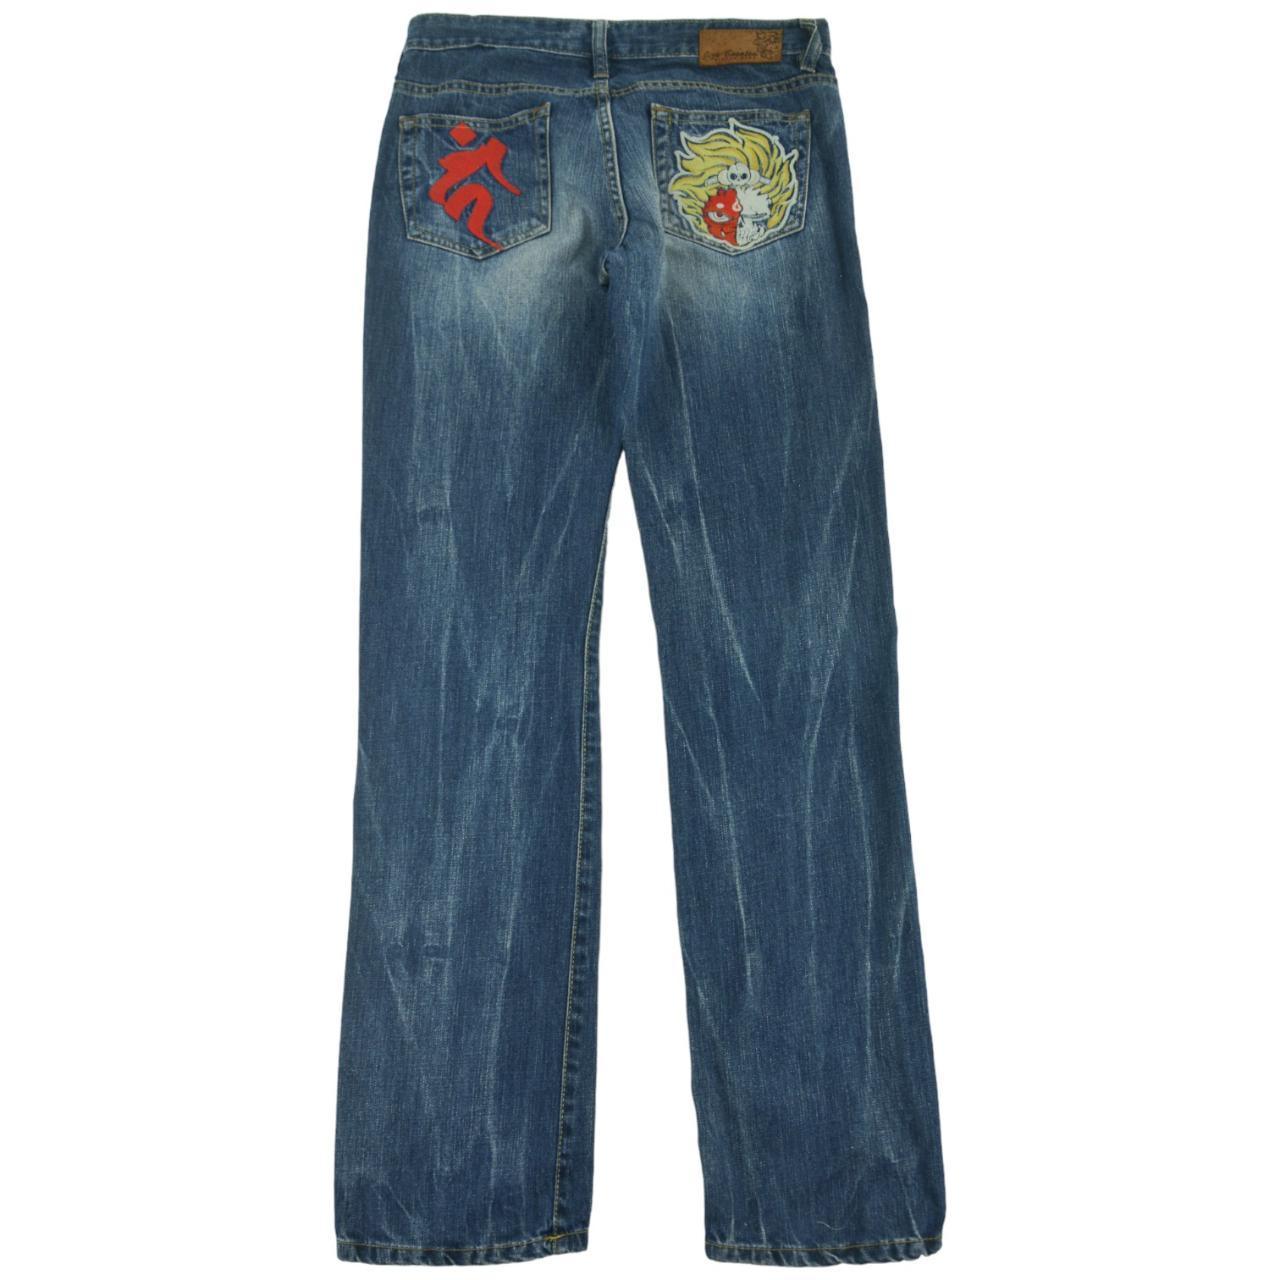 Vintage Jizo Japanese Denim Jeans Size W30 - Known Source